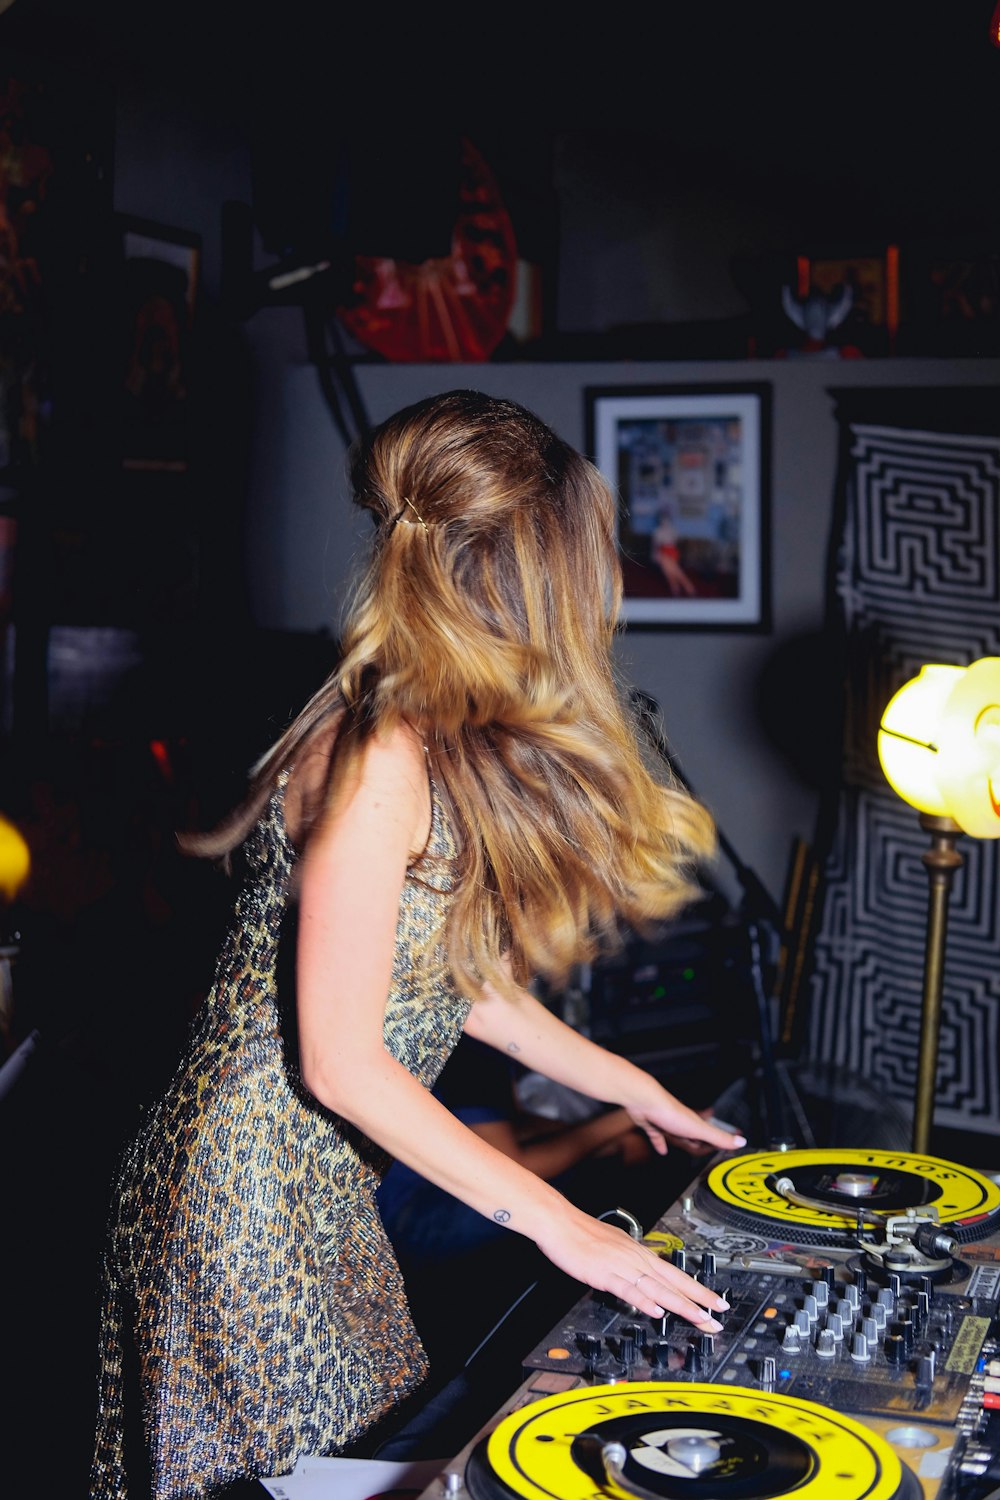 woman playing mixer at night